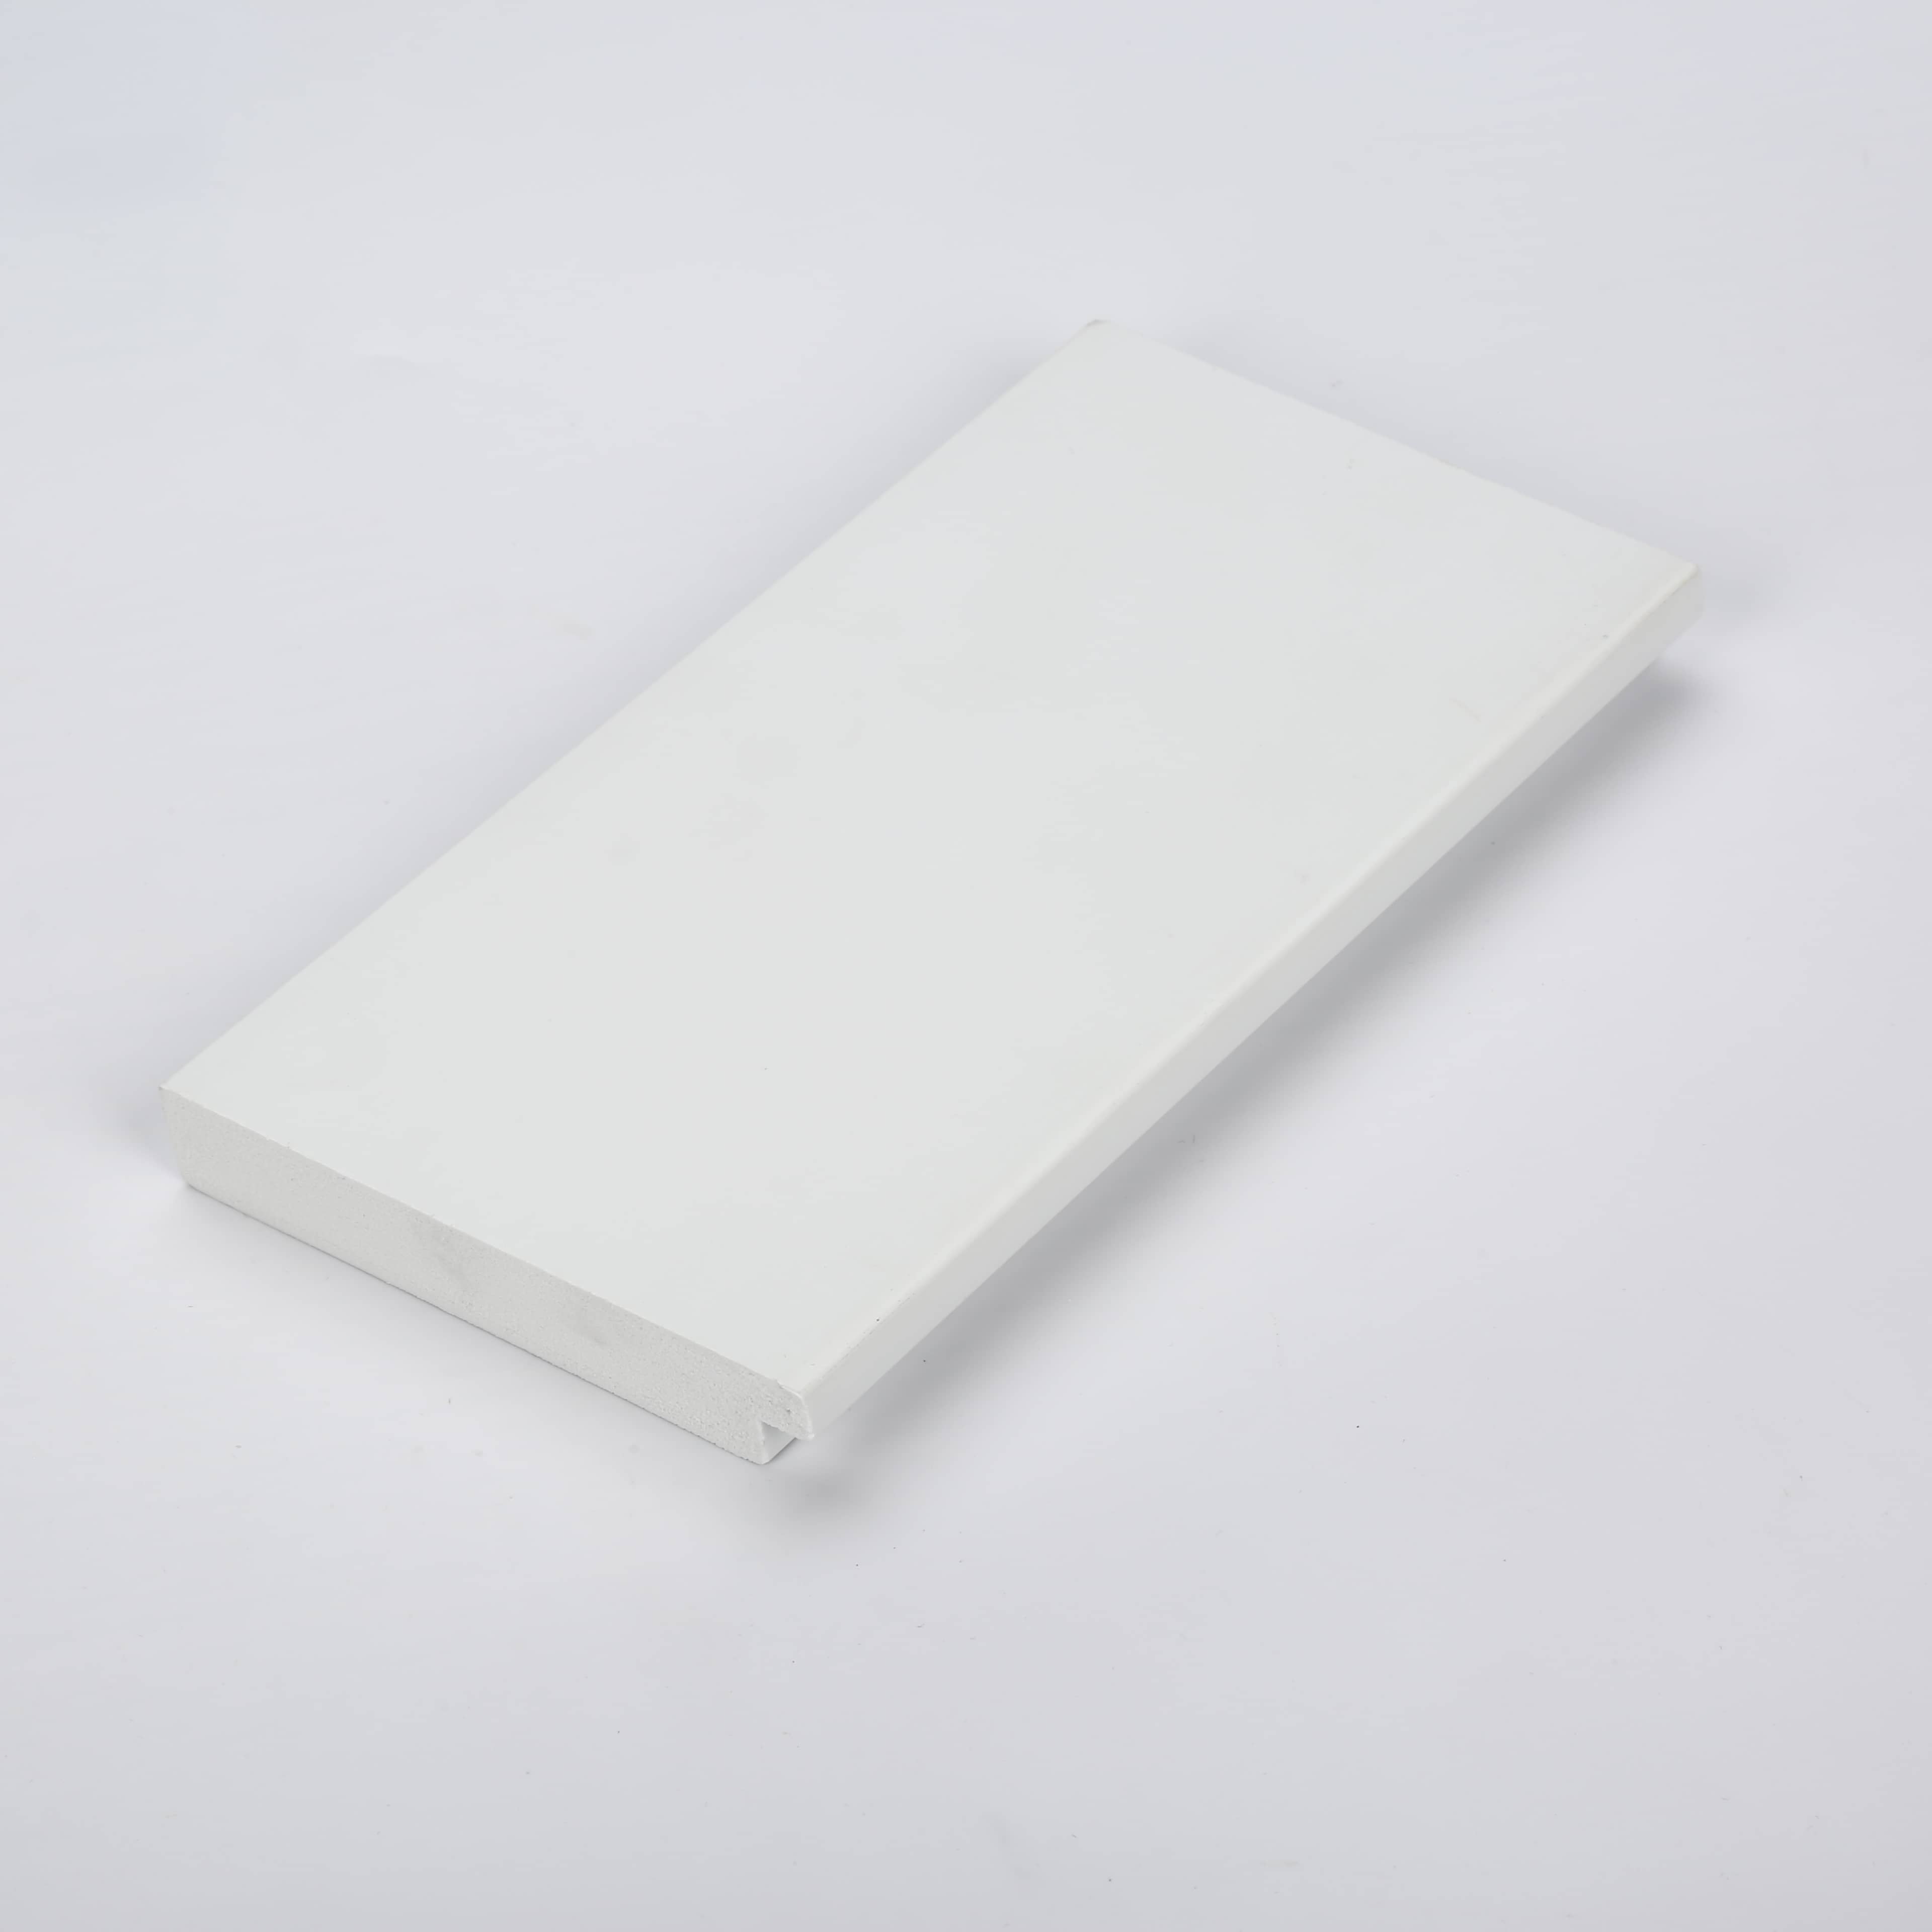 High Density Foamed PVC Profile